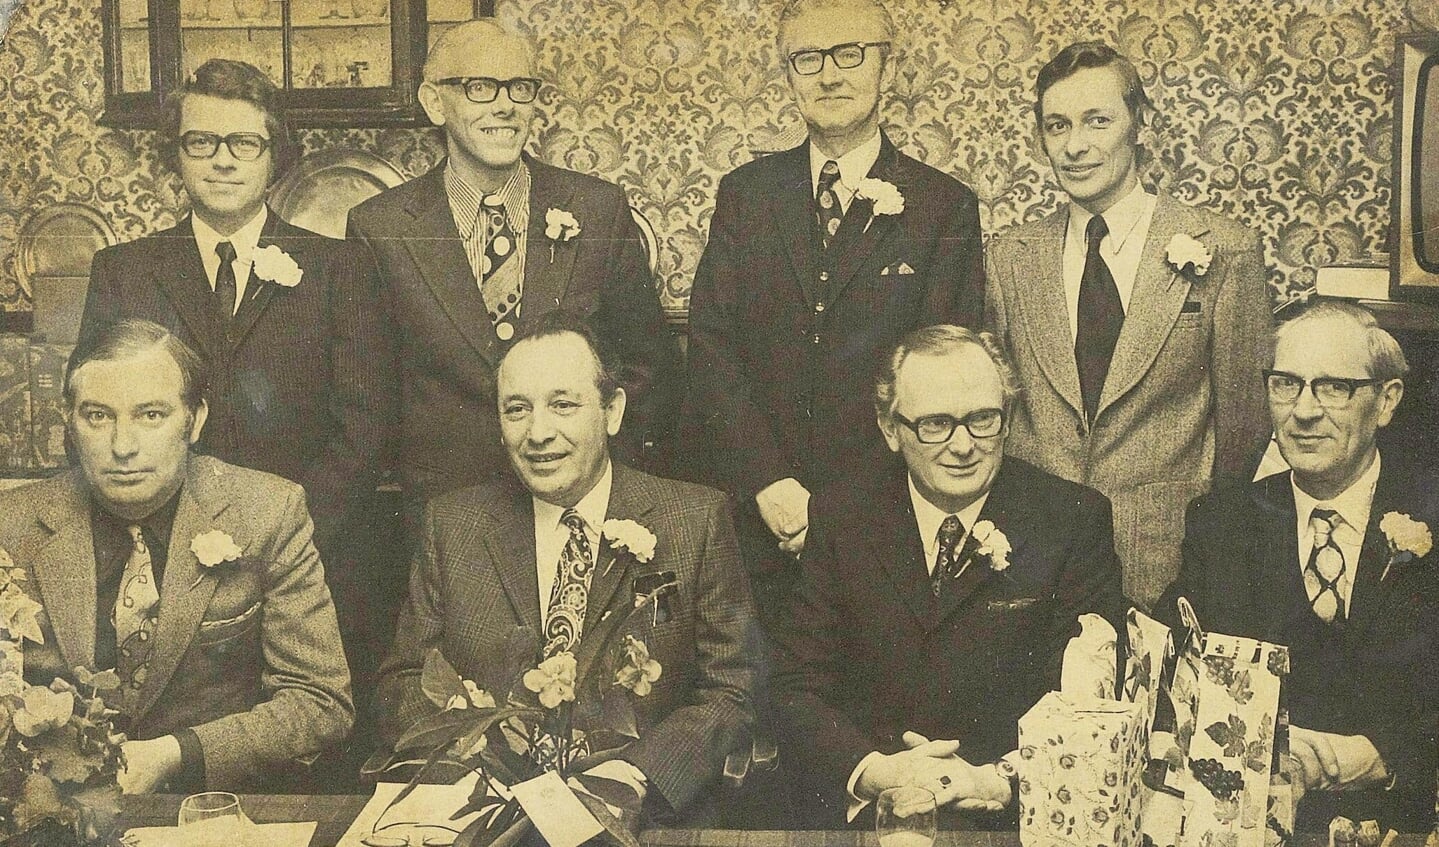 HABI bestuursleden in 1973. Van links naar rechts: Staand : Teun van Dam, Herman Zandvoort, B. Eshuis, Jan Muller Zittend : G.J. Dangremond, Ies de Lange, J. Th. Gijsbers, G. Brunnekreef.